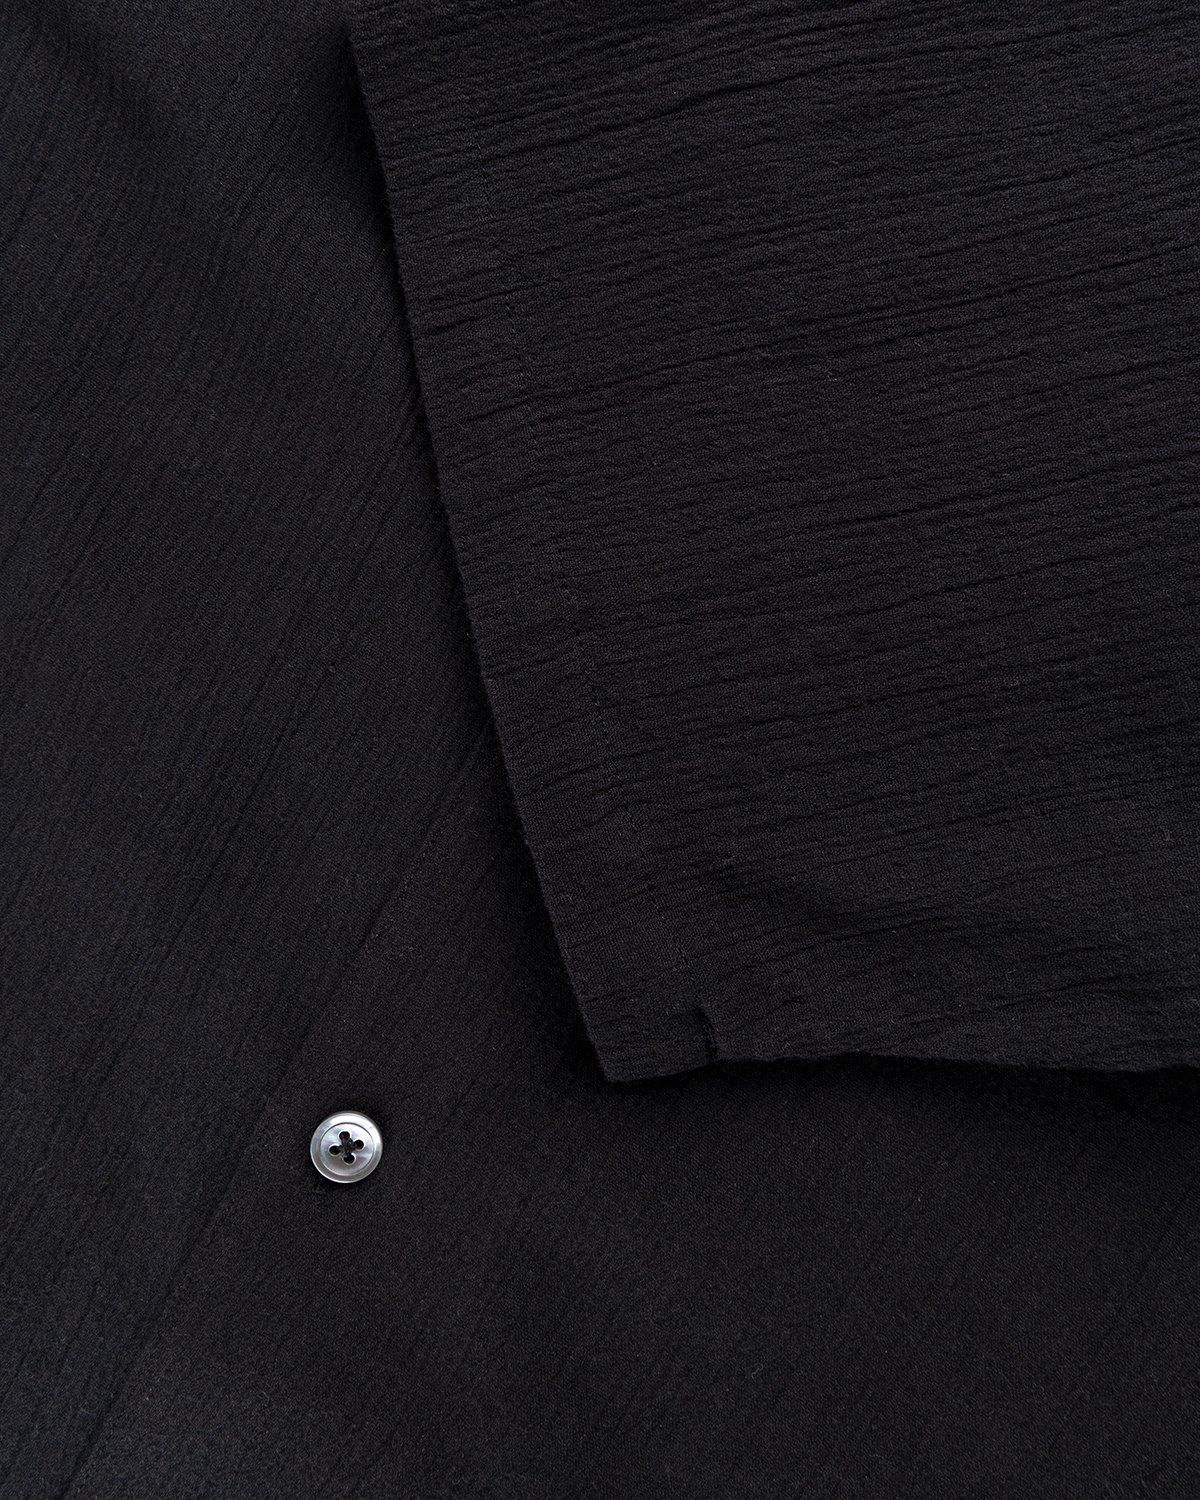 Highsnobiety – Crepe Short Sleeve Shirt Black - Shortsleeve Shirts - Black - Image 6